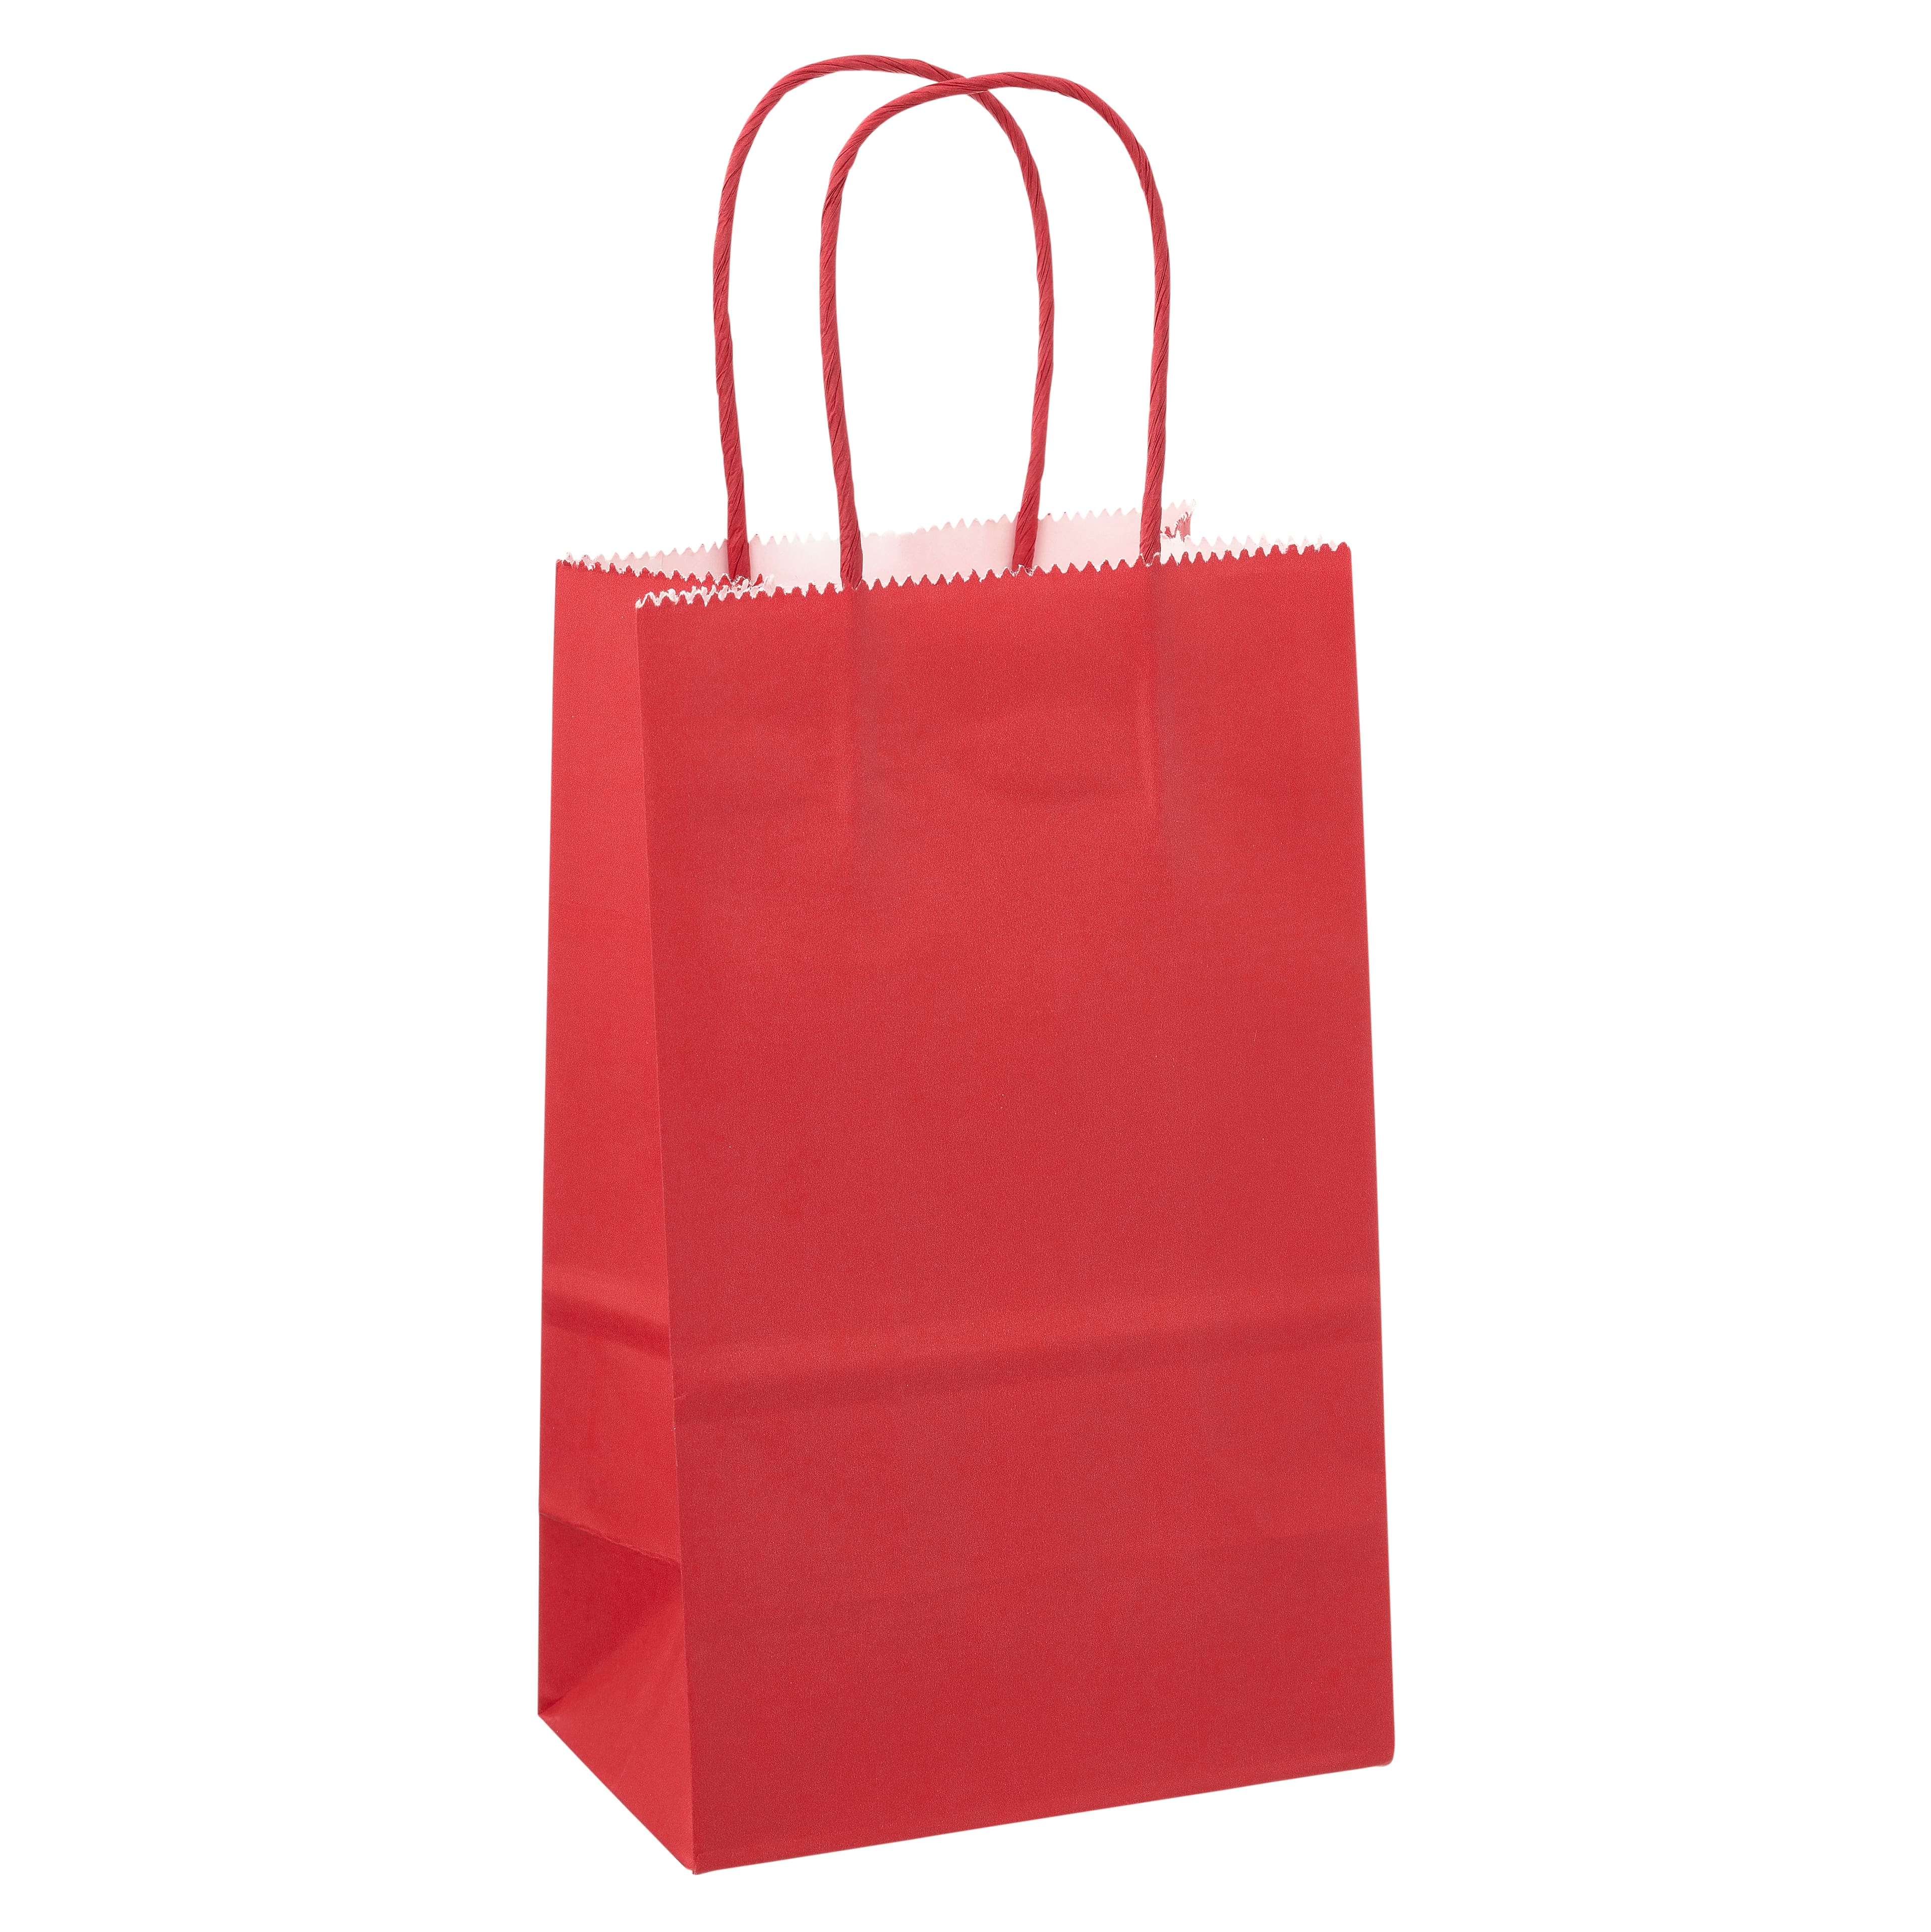 Medium Red Paper Treat Bags 12ct